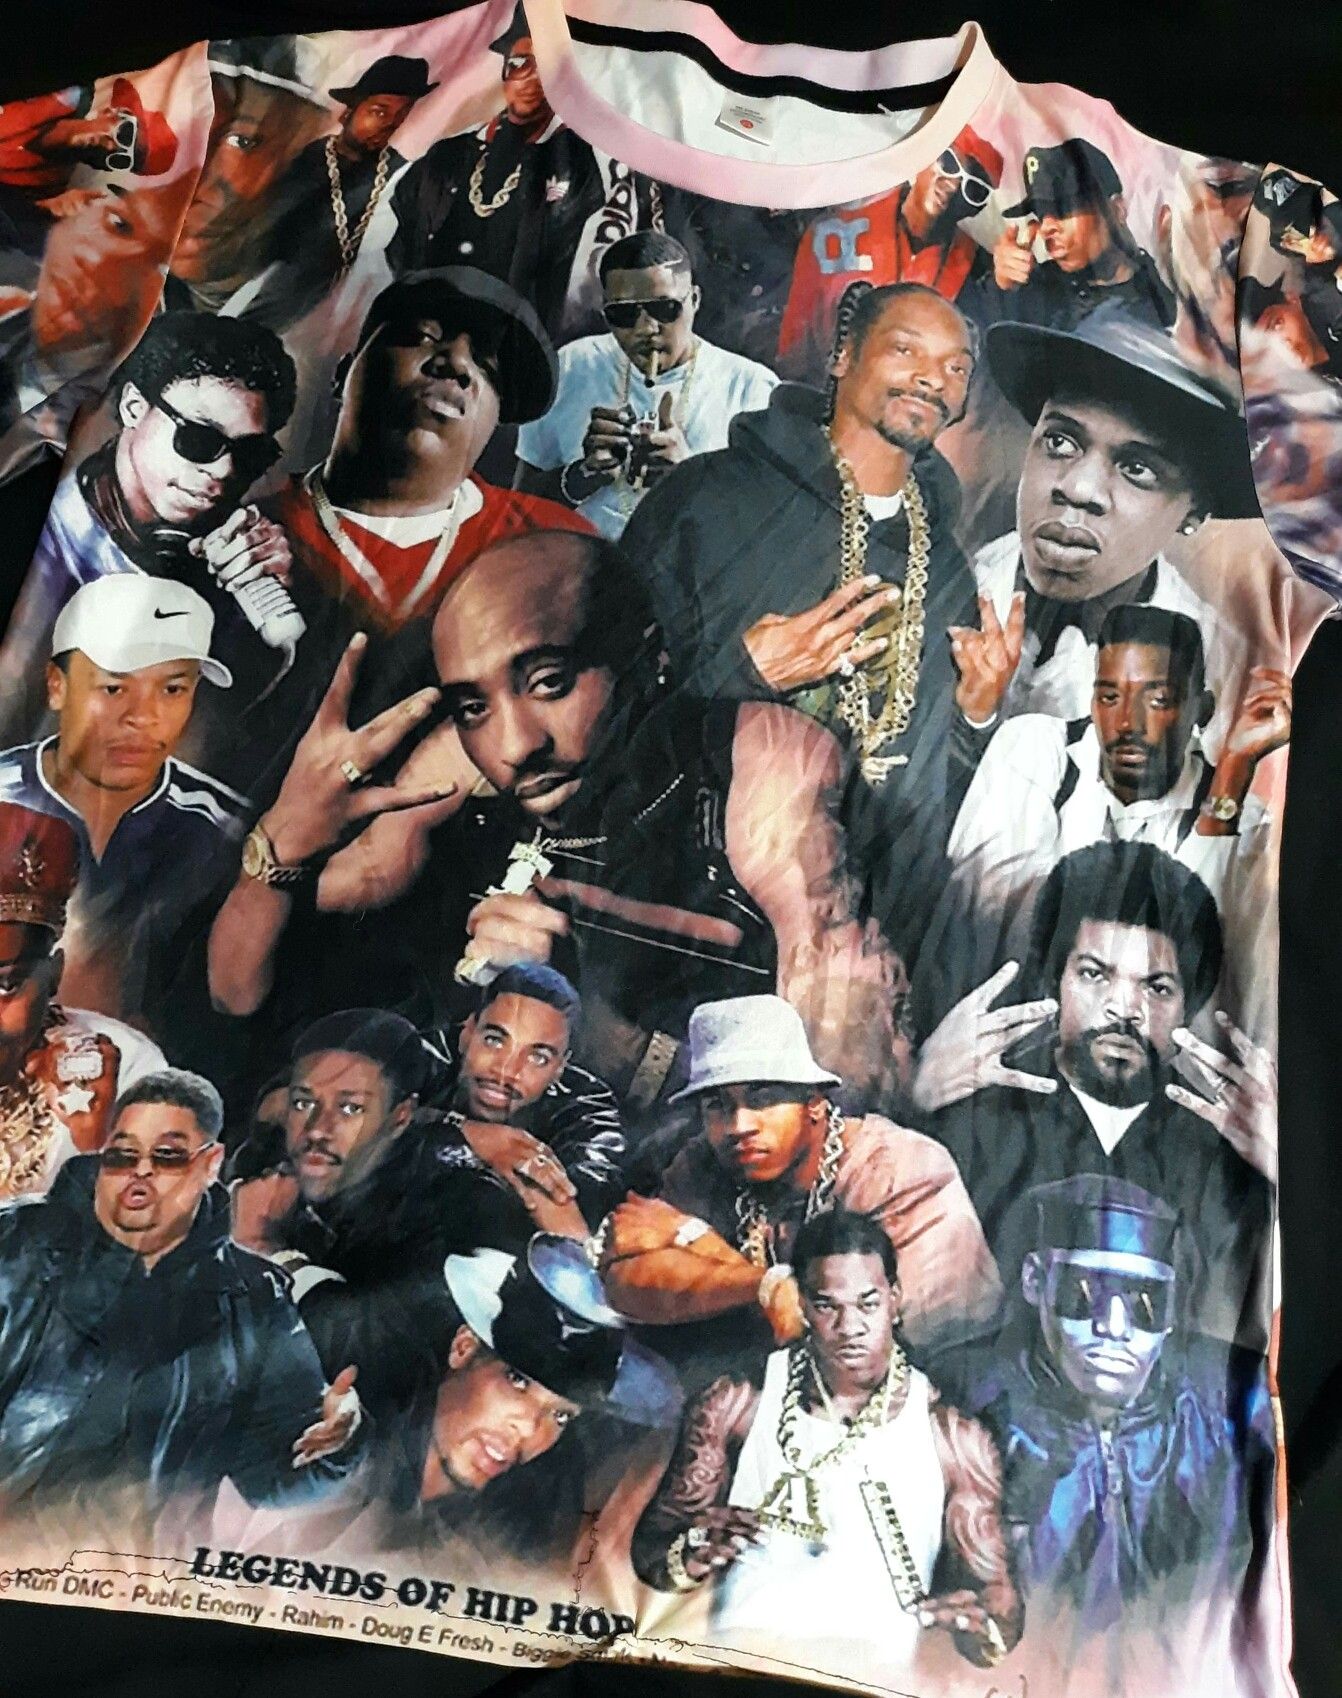 Legends of Hip-hop T-shirt